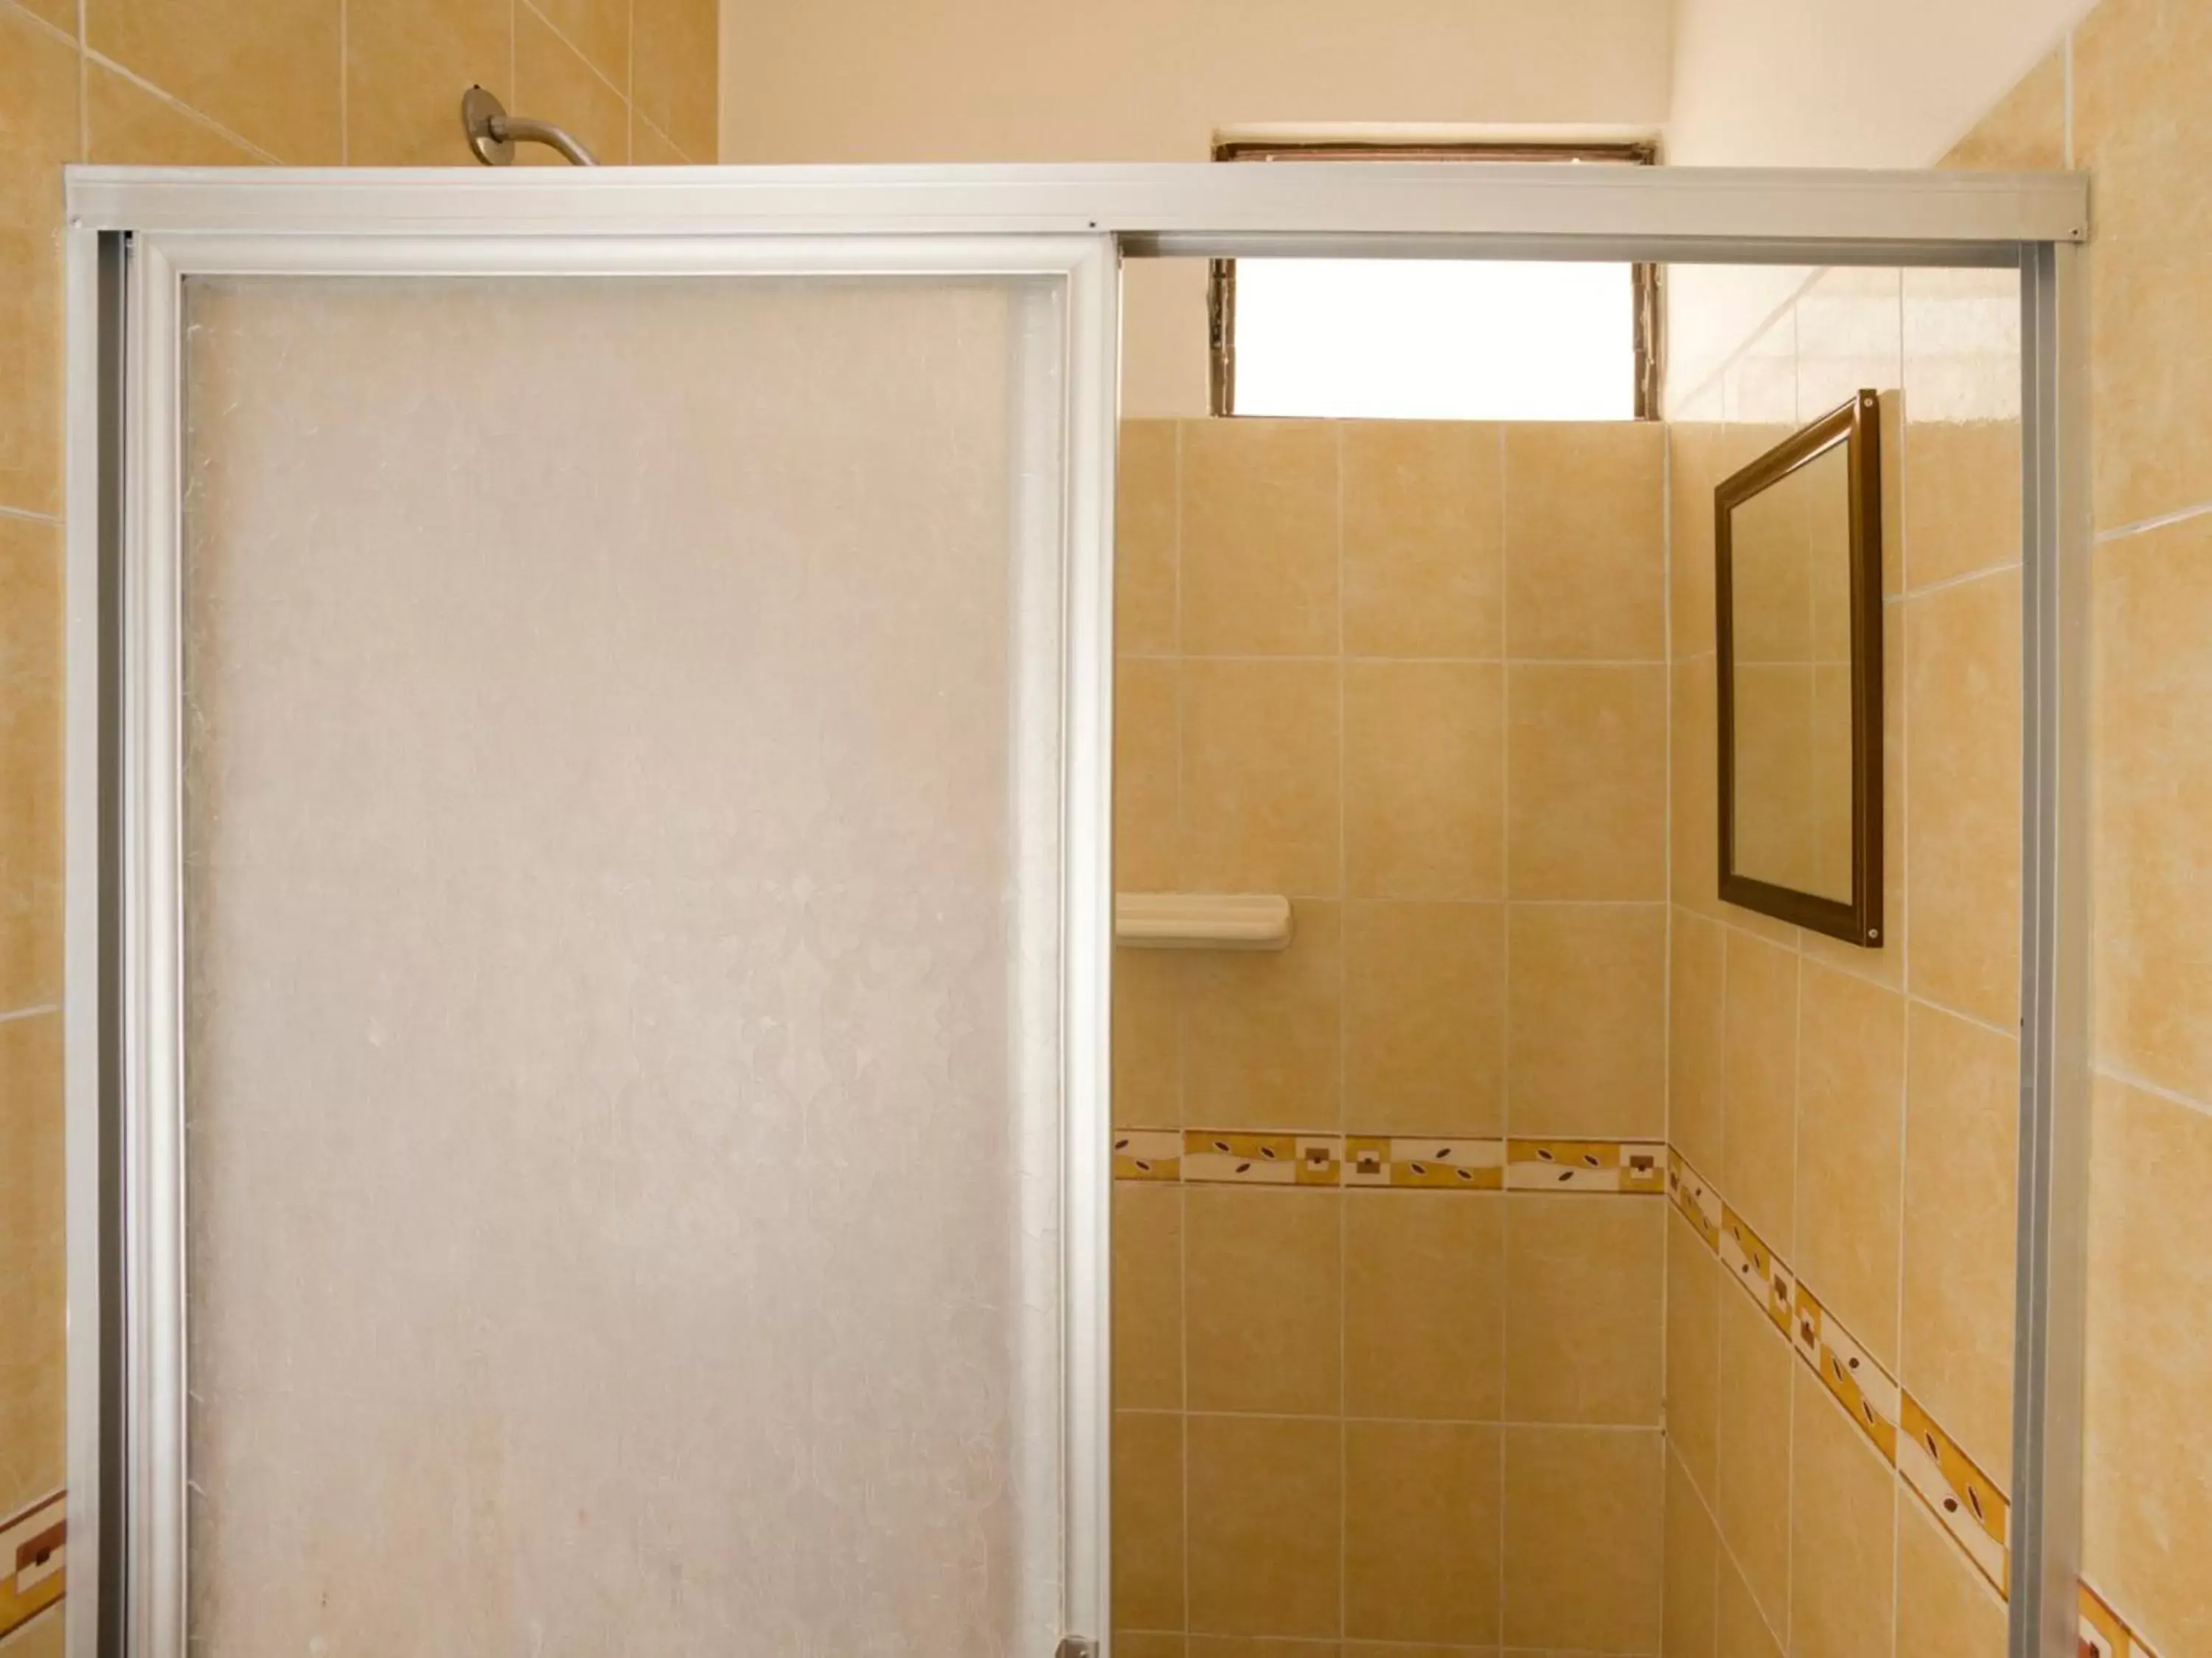 Bathroom in OYO Hotel Montes, Atlixco Puebla